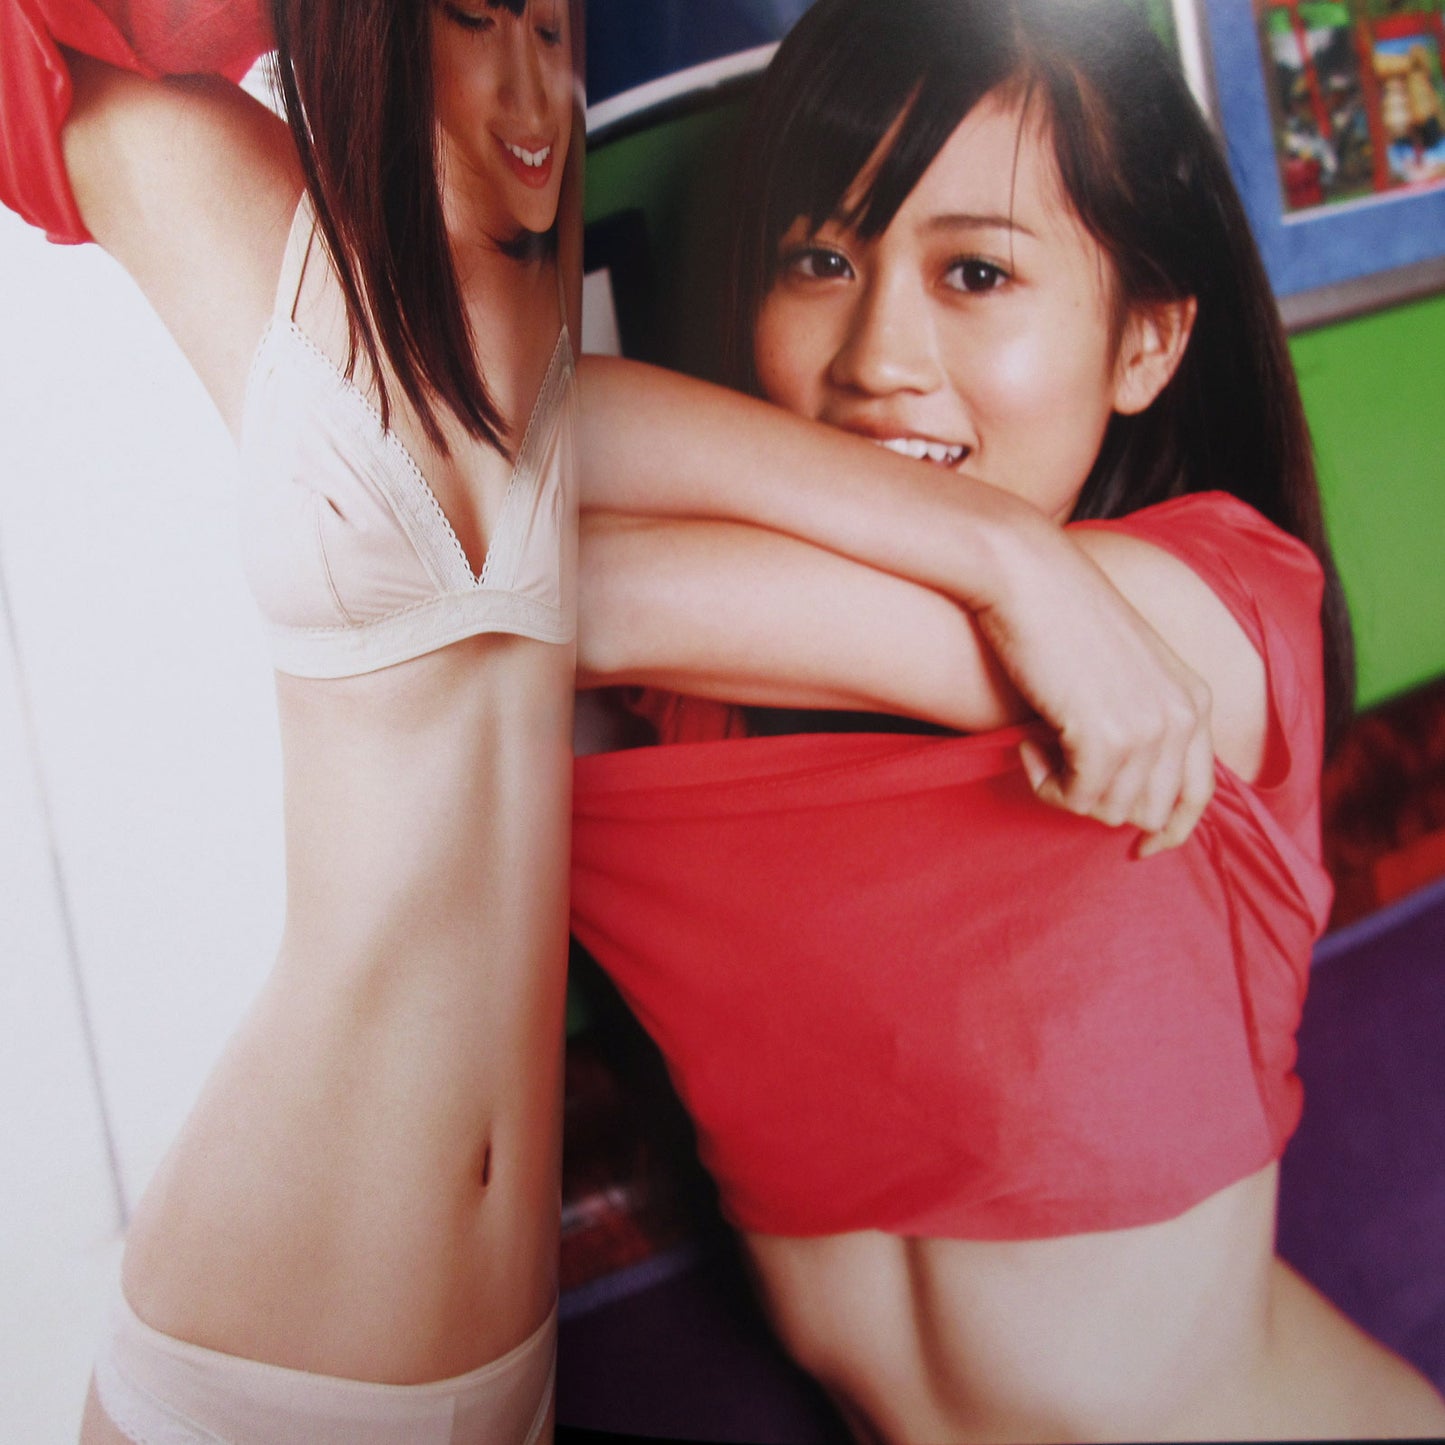 Atsuko Maeda Photo Book "Atsuko" / AKB48